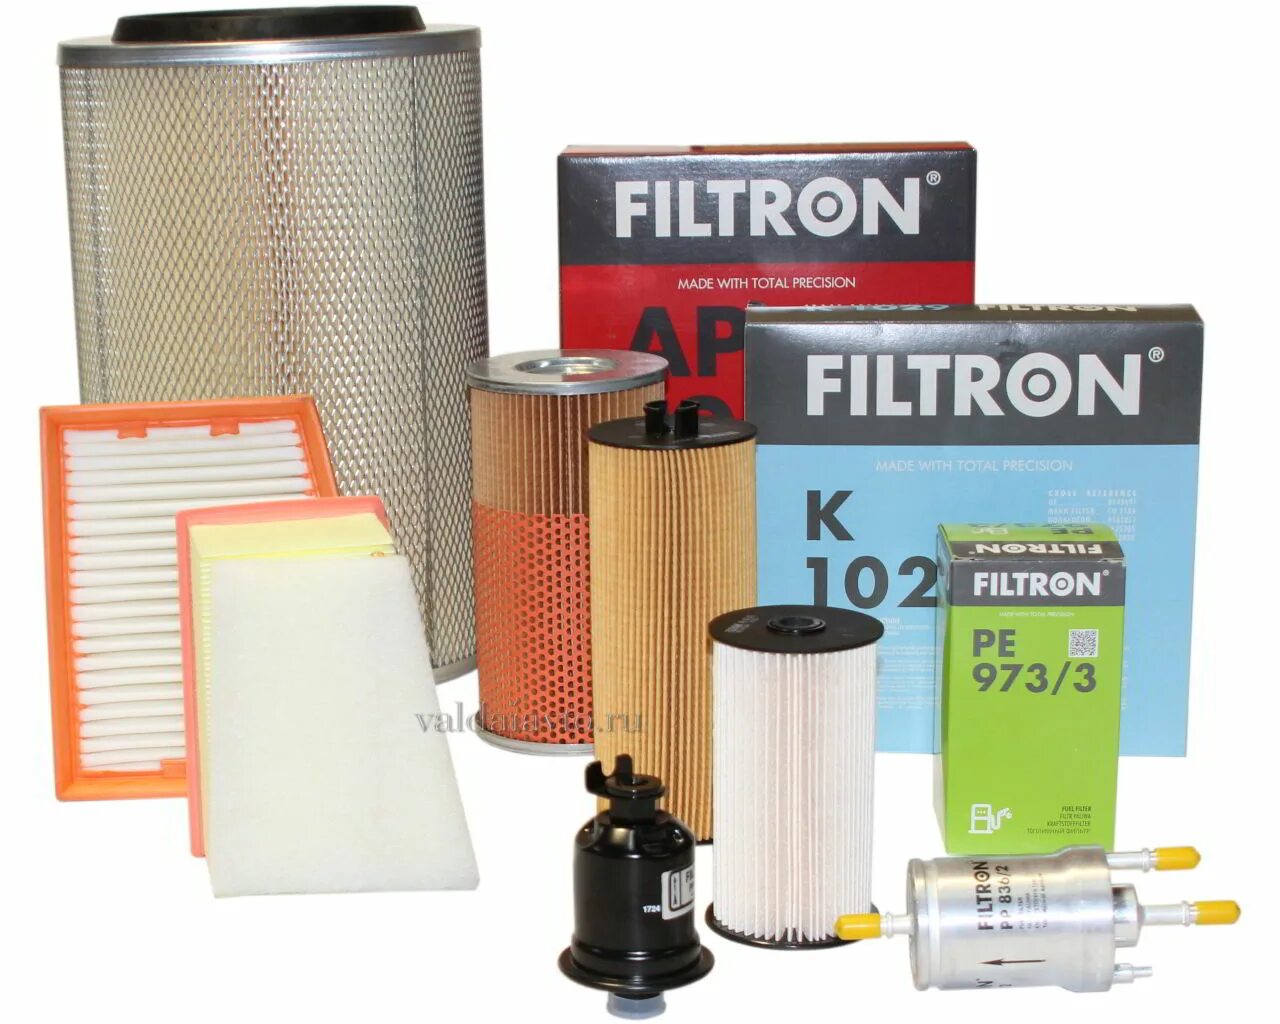 Фильтры фирмы Фильтрон. Воздушный фильтр FILTRON для ГАЗ Газель 2003-2006. Воздушный автомобильный фильтр Фильтрон. Фильтр FILTRON 1335. Воздушный фильтр какой фирма